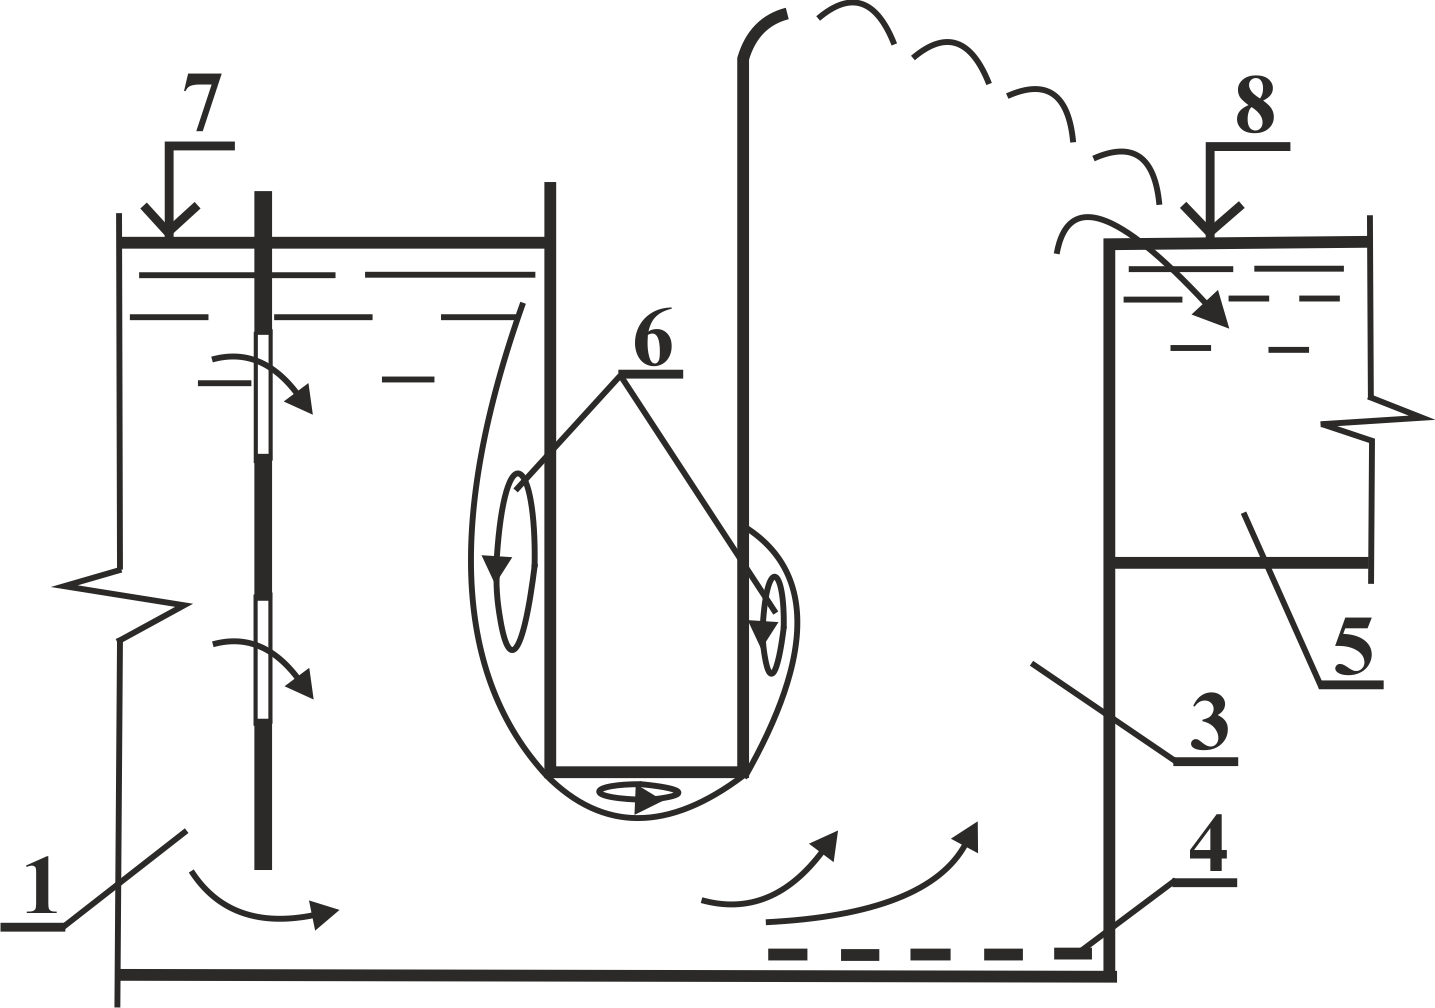 Вариант сопряжения эрлифтного подъемника с помощью башни: 1 - лоток приема; 2 - диафрагма; 3 - подъёмная шахт; 4 - форсунка; 5 - отводящий тракт; 6 - области завихрений; 7, 8 - верхний и нижний бьефы соответственно